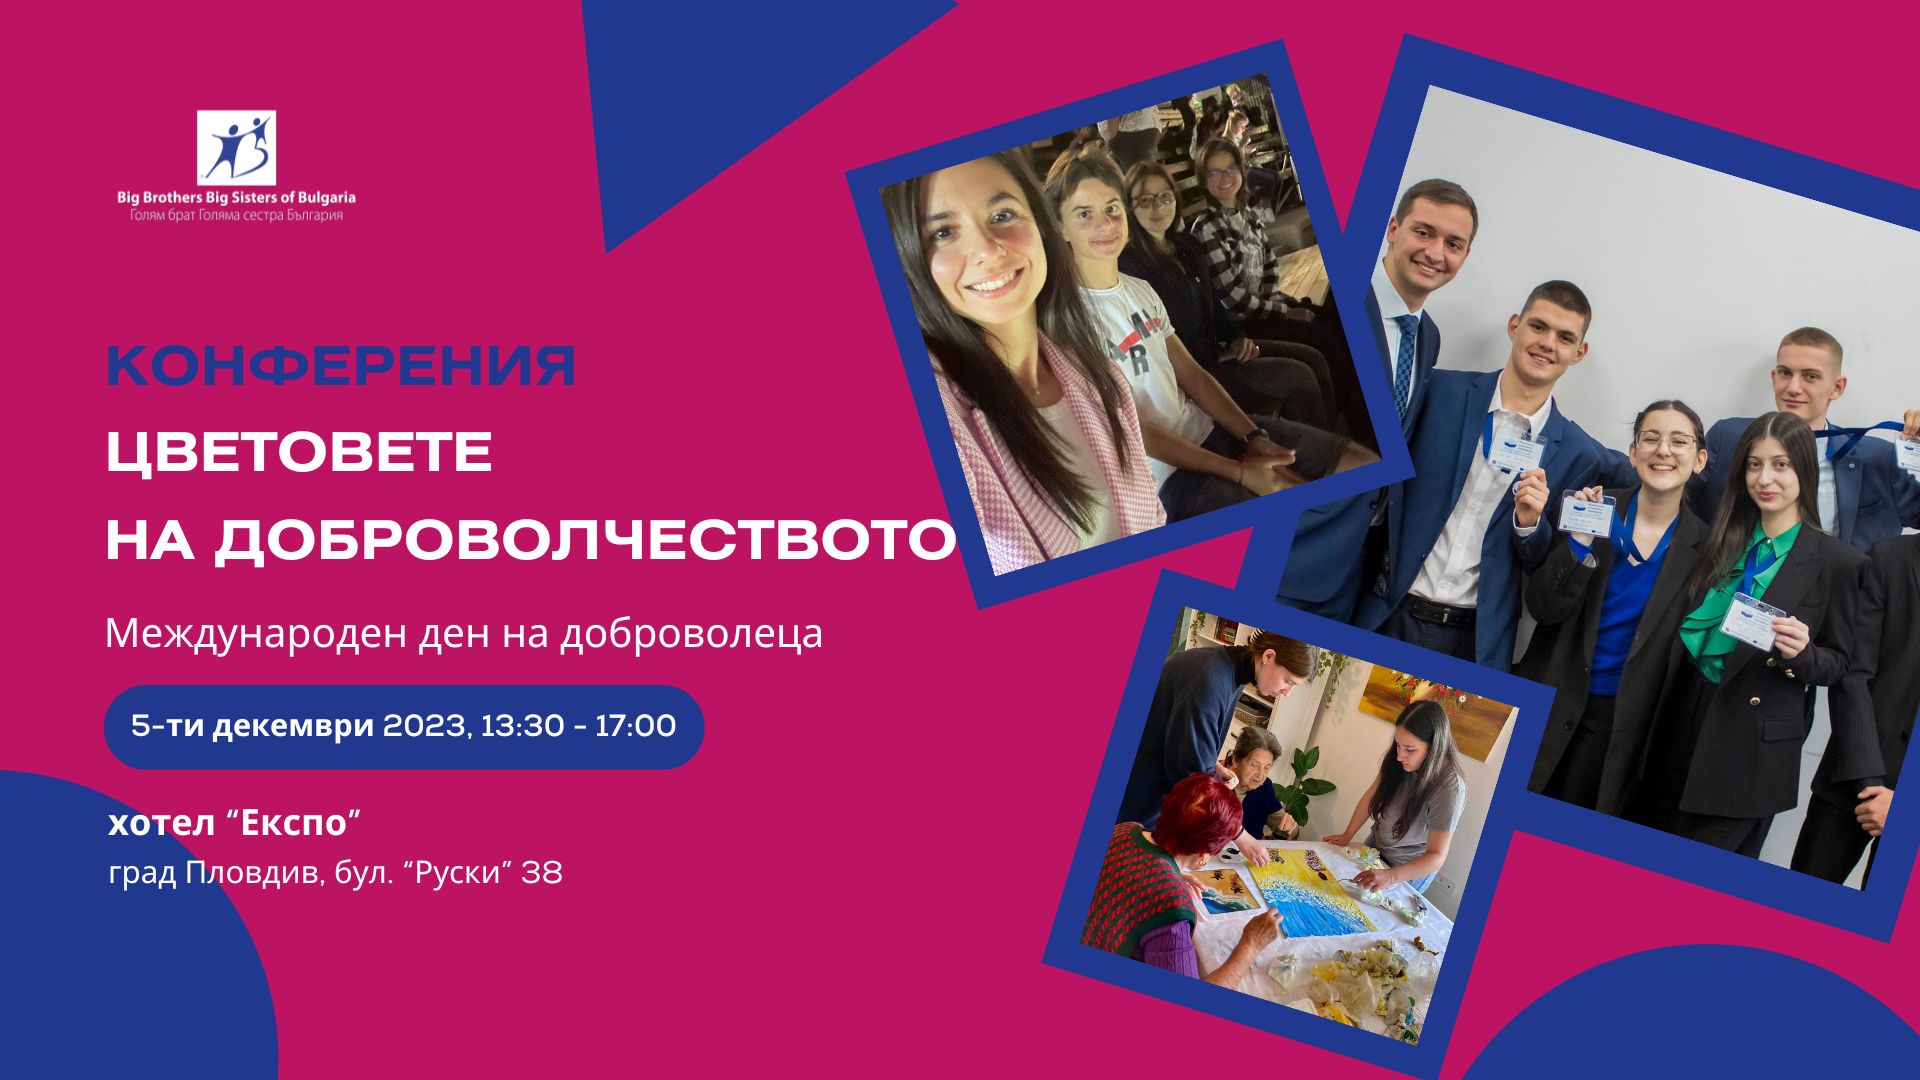 Асоциация „Голям брат, Голяма сестра – България“ ще отбележи 5-и декември – Международния ден на доброволеца с представяне на